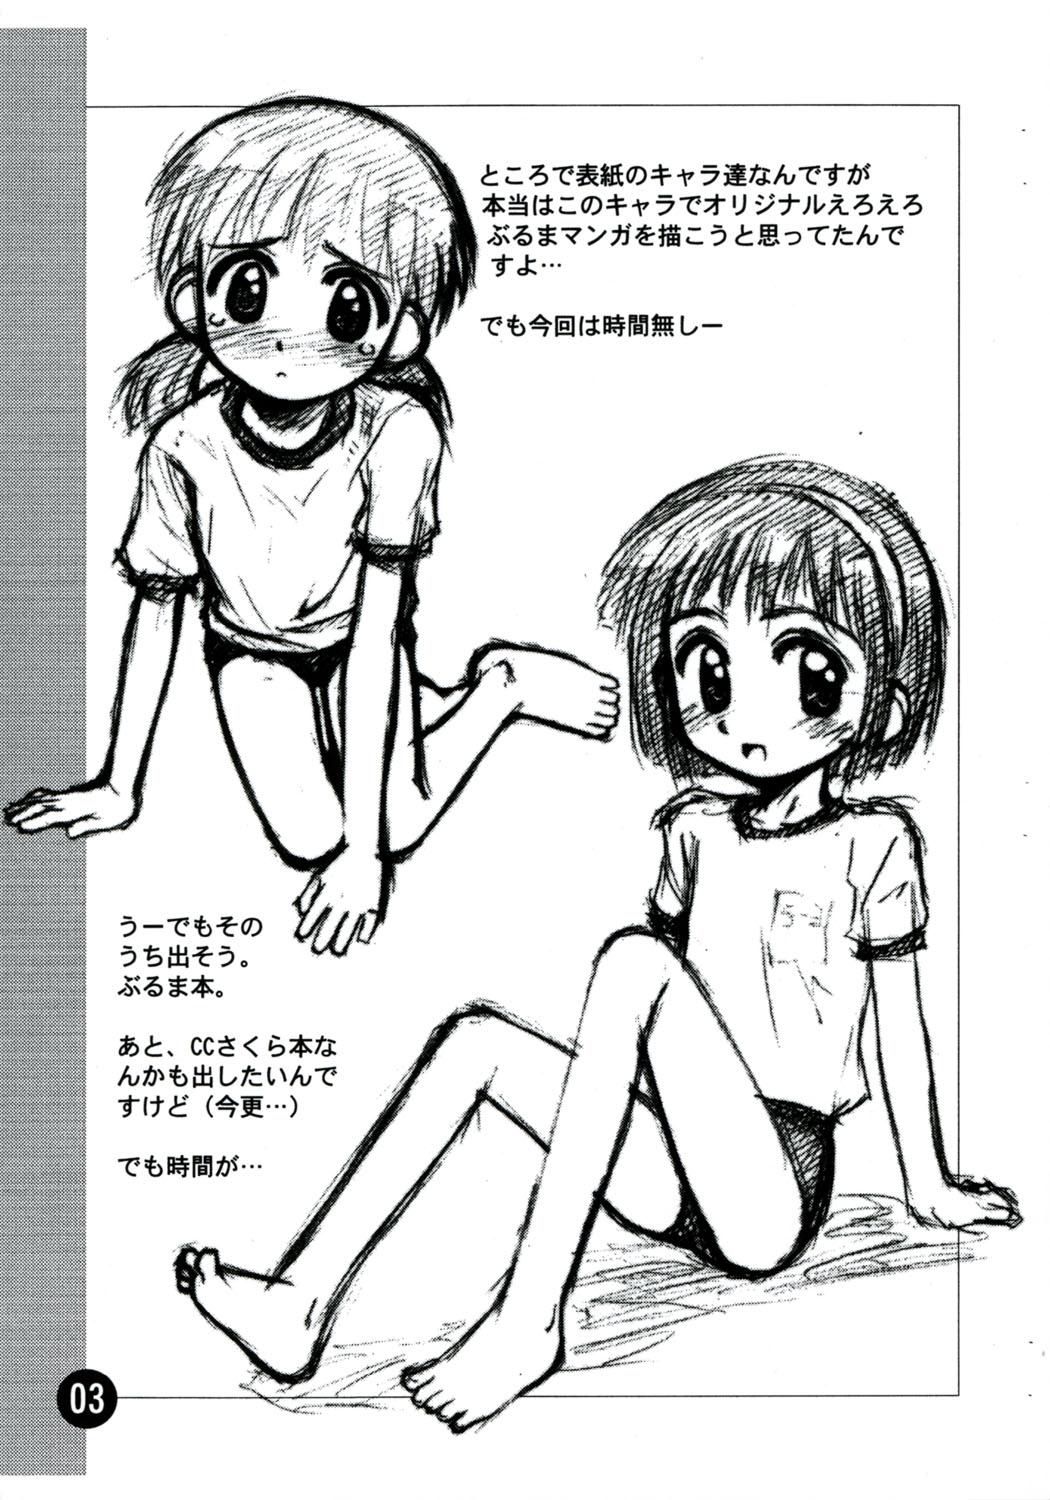 Dirty Talk Rakugaki File 4 Yon - Cosmic baton girl comet-san Puta - Page 3